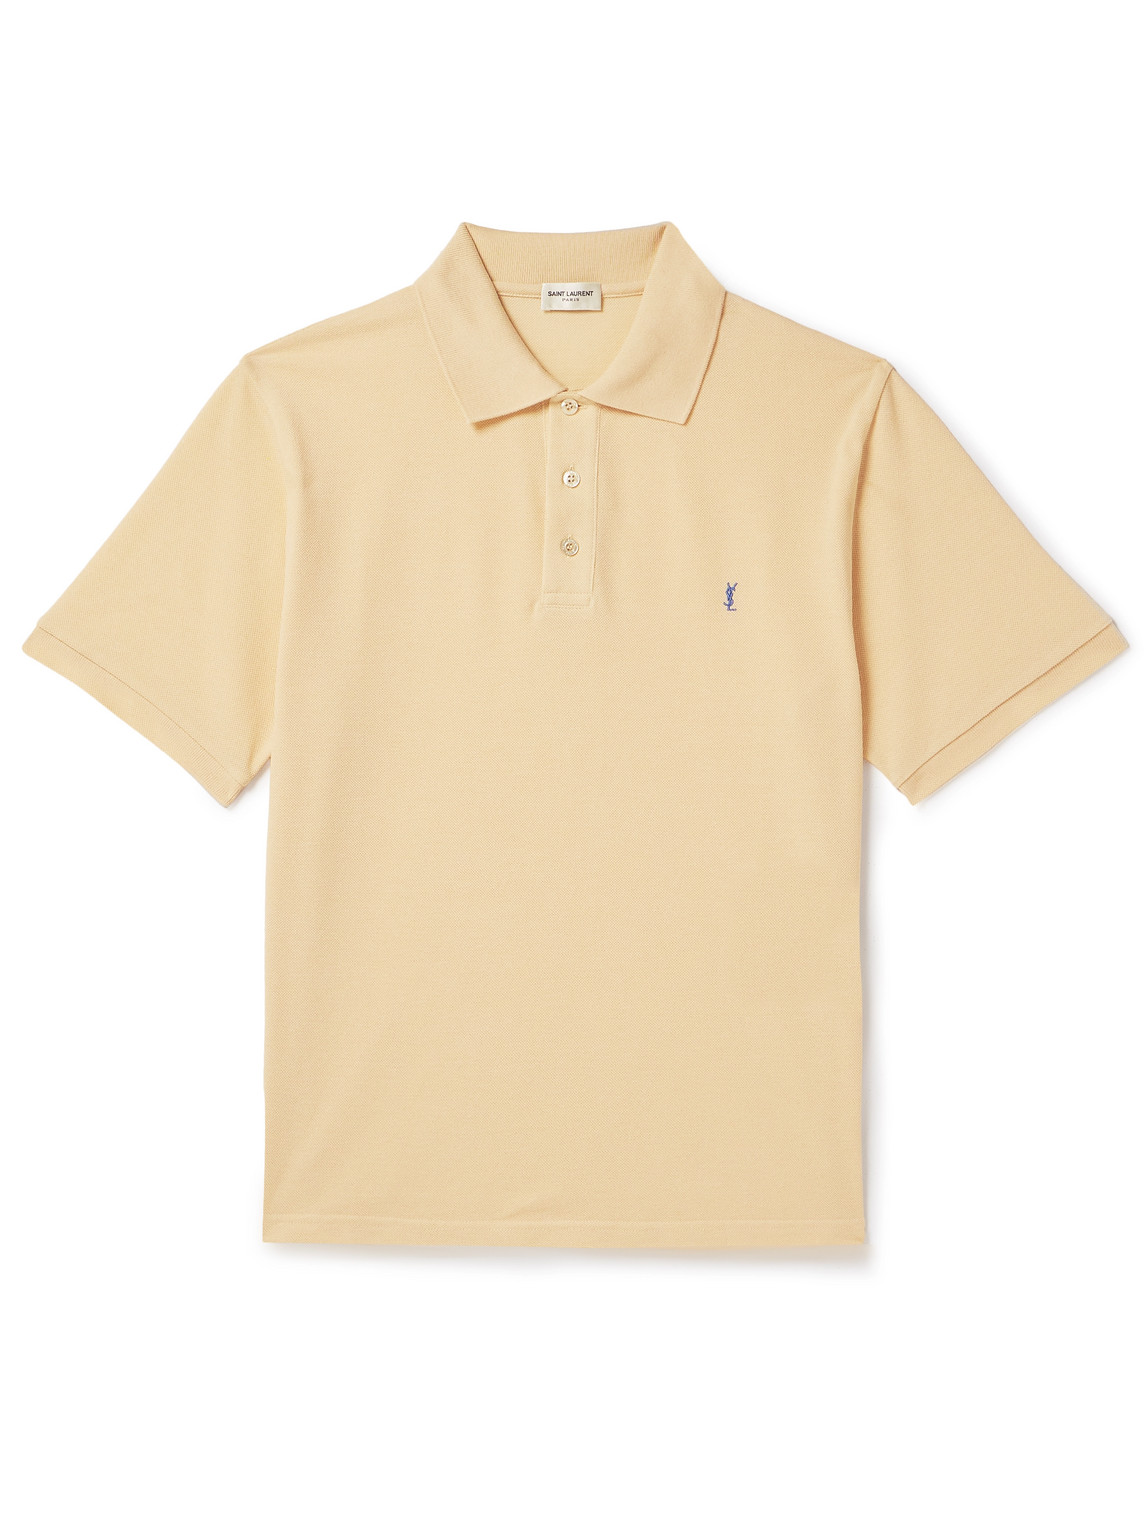 SAINT LAURENT - Logo-Embroidered Cotton-Blend Piqué Polo Shirt - Men - Yellow - M von SAINT LAURENT